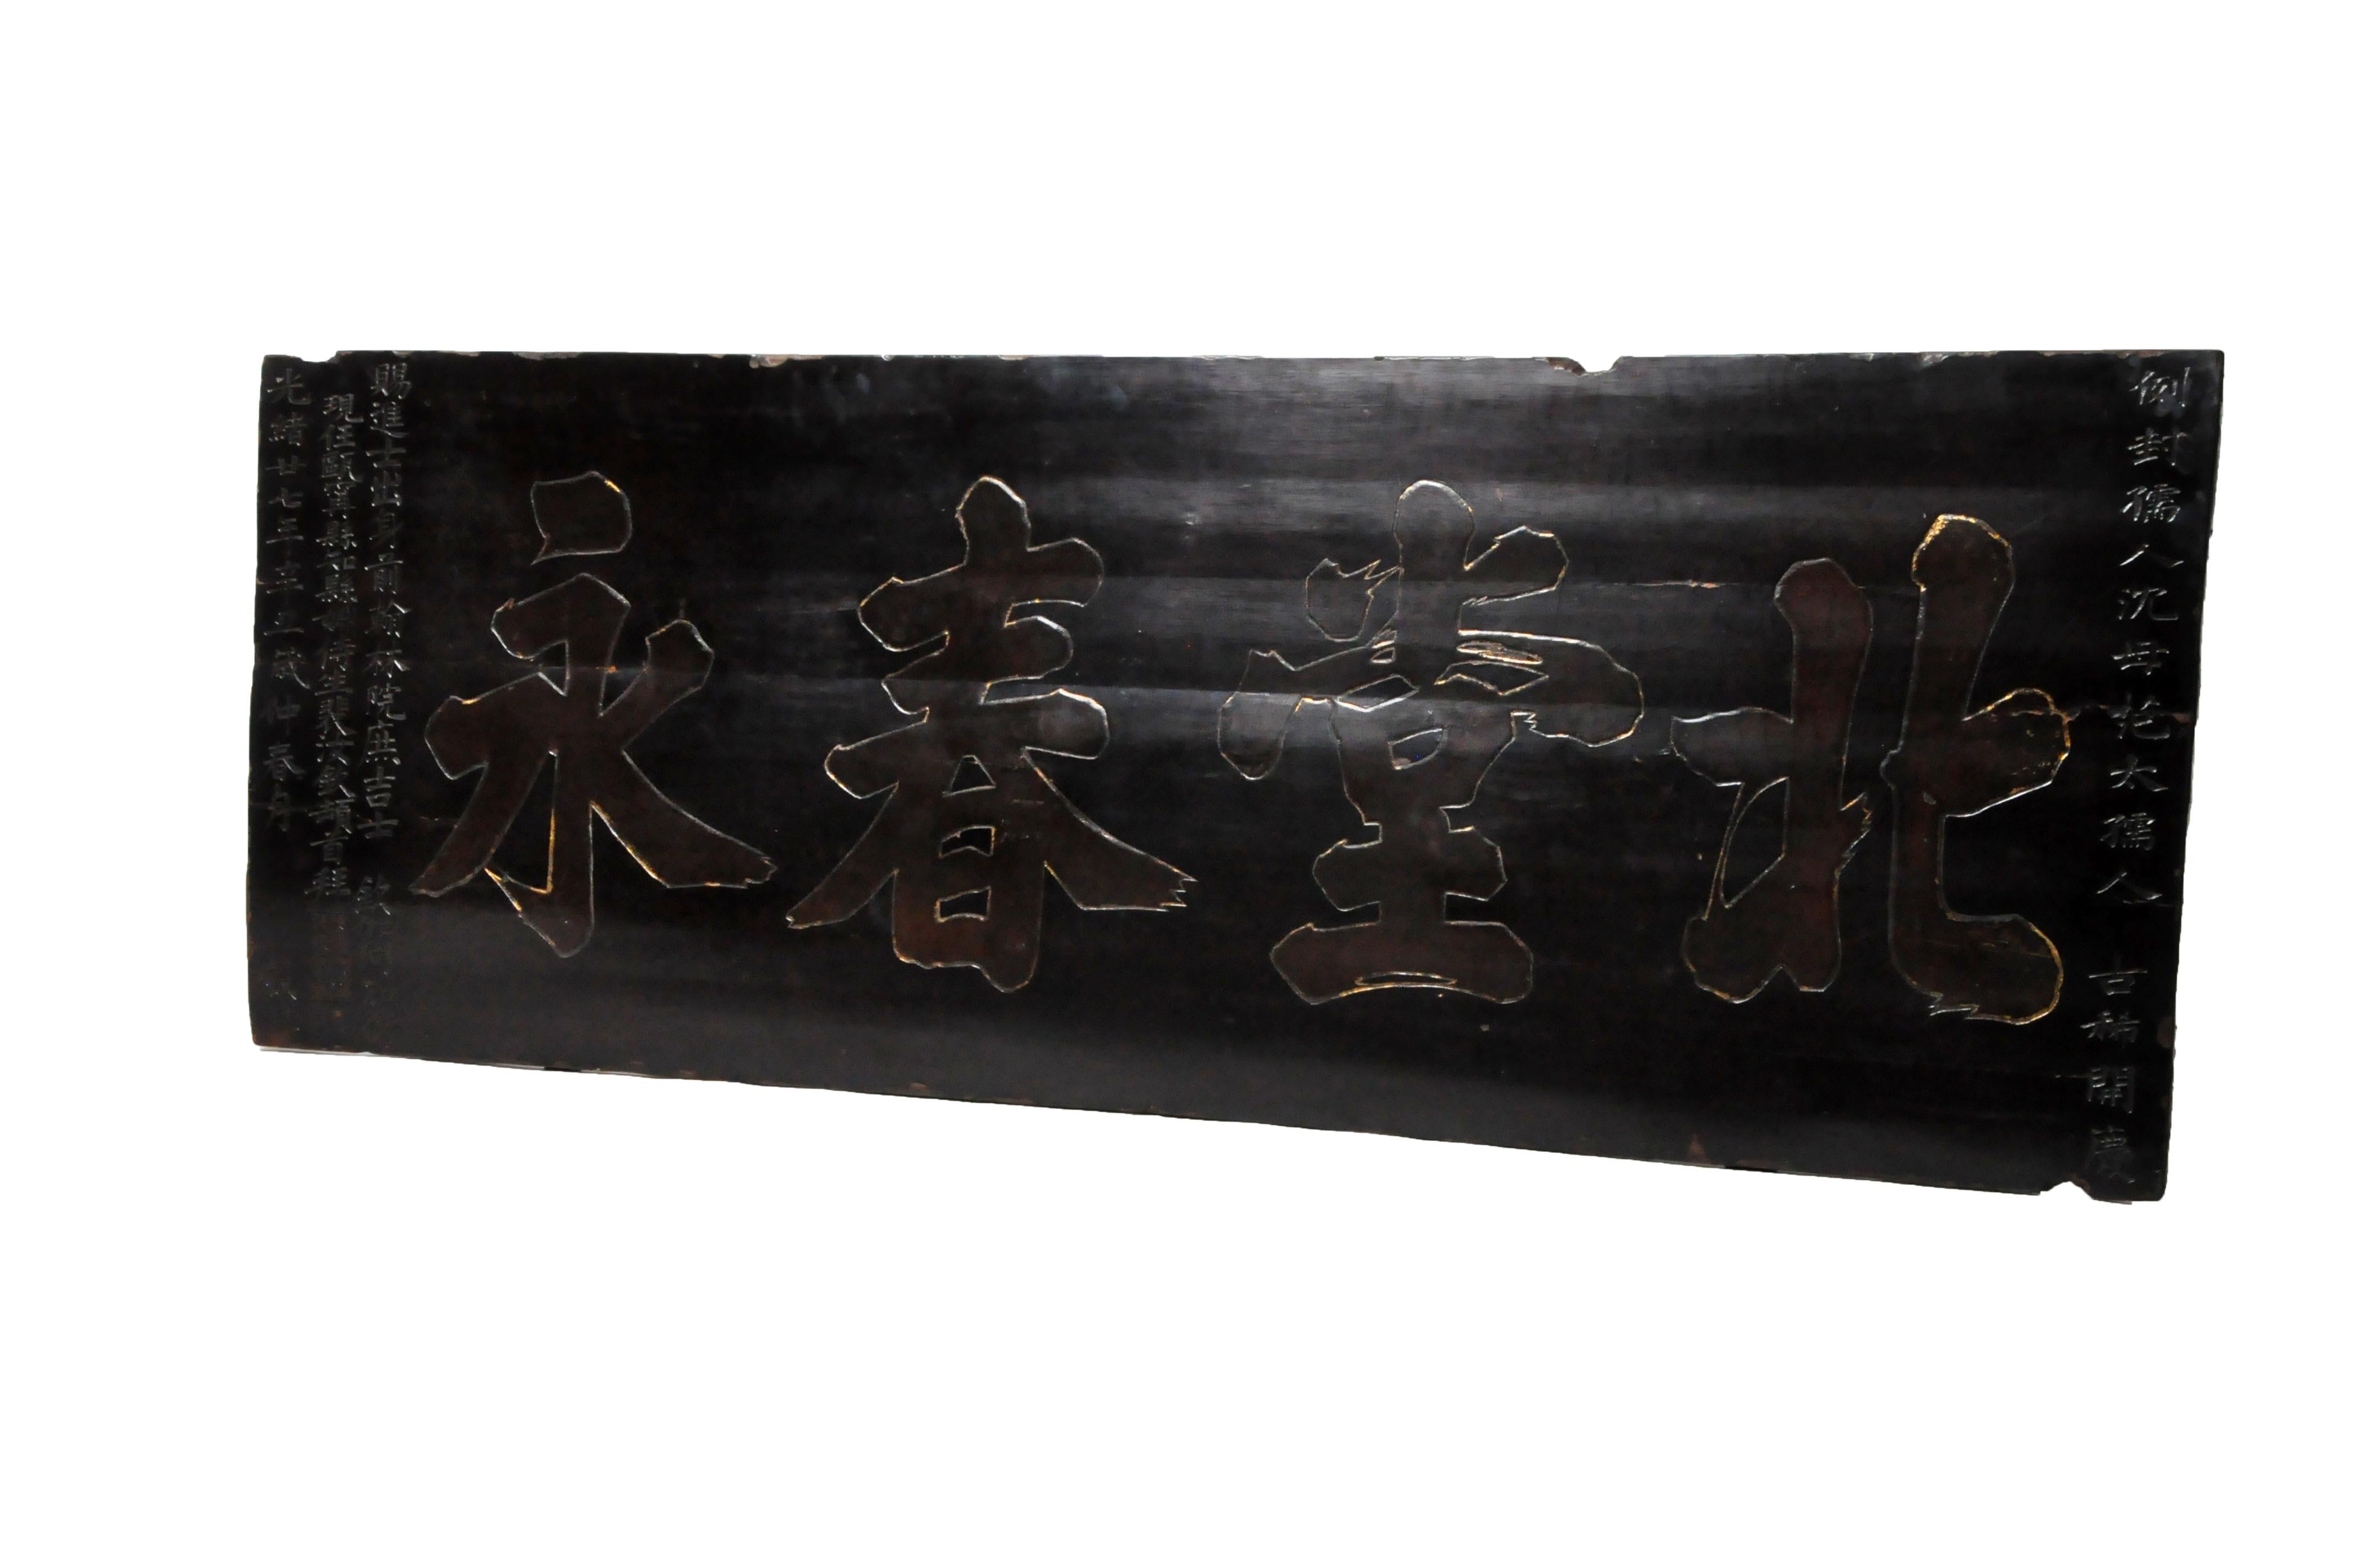 Ce panneau impressionnant était autrefois suspendu au-dessus de l'entrée d'une salle ancestrale chinoise. Il est fabriqué à partir de planches de bois d'orme recouvertes de couches de laque noire épaisse pour le protéger des éléments. Les caractères